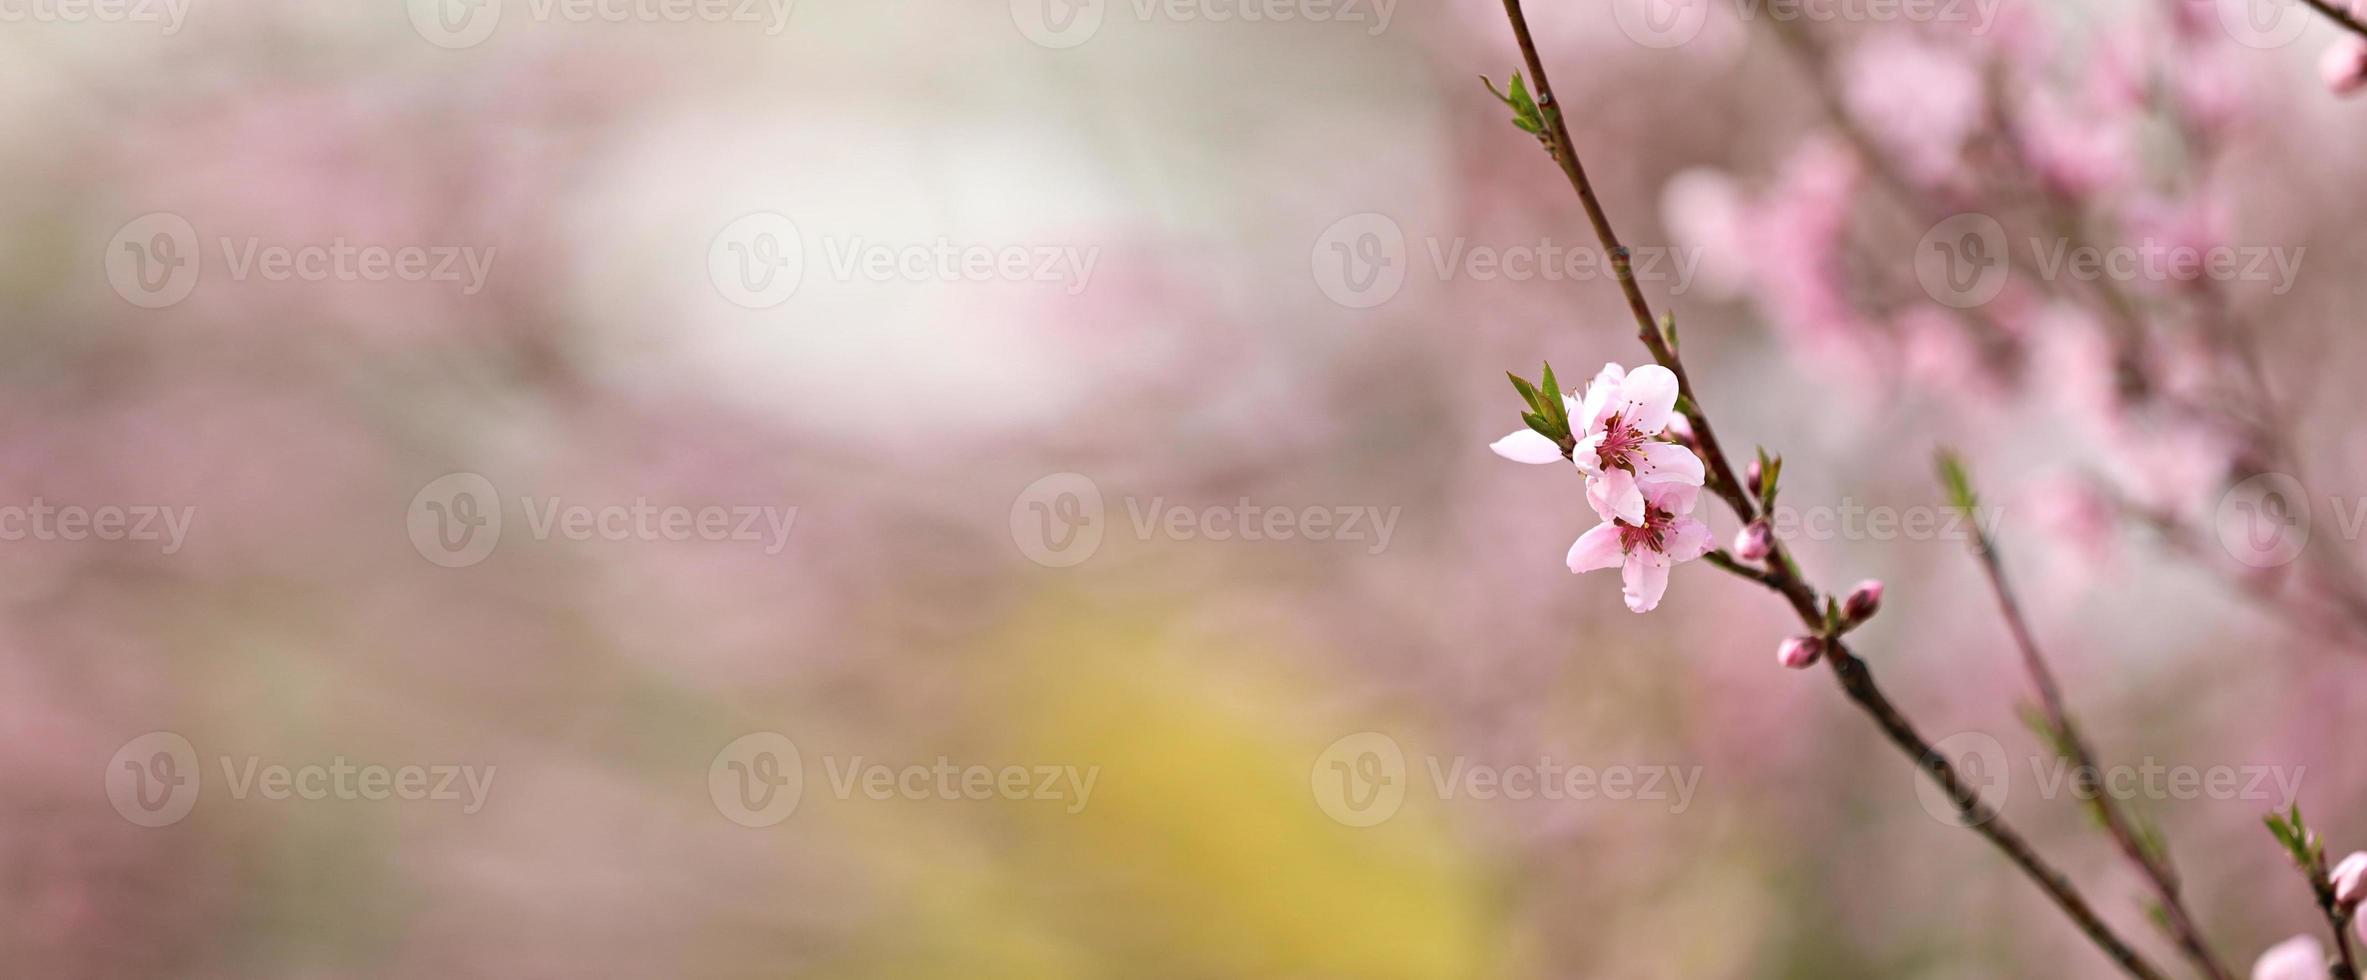 roze perzik bloem bloesems in voorjaar seizoen. mooi perzik bloesems zwaaien in de wind. mooi helder roze bloeiend perzik bloemen Aan de takken. detailopname foto